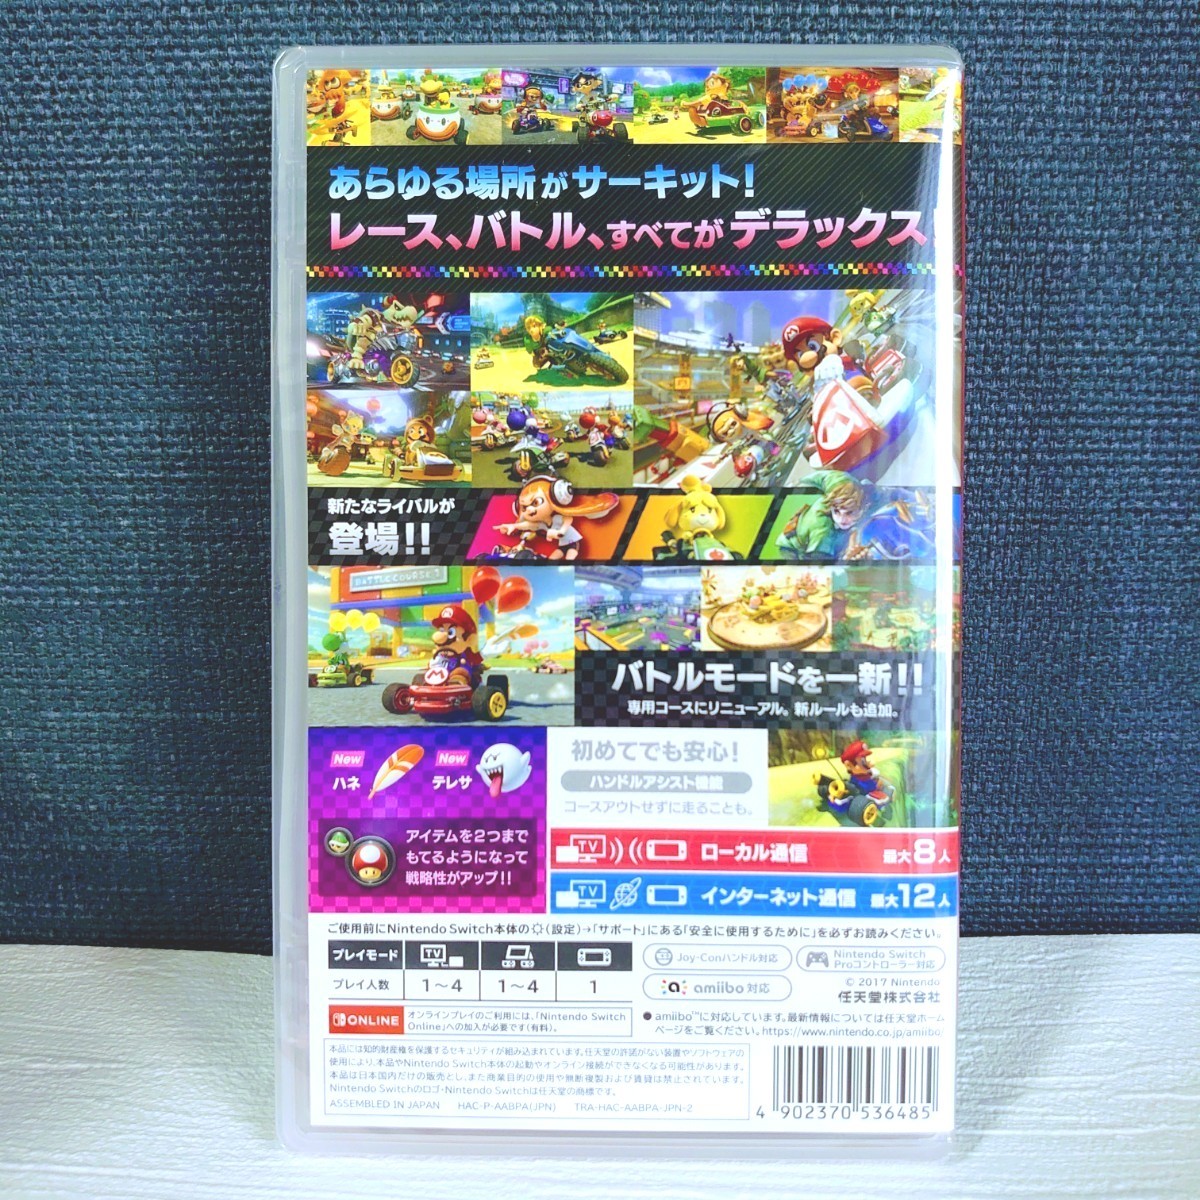 【今月購入】Nintendo Switch マリオカート8 デラックス + 桃太郎電鉄～昭和平成令和も定番～